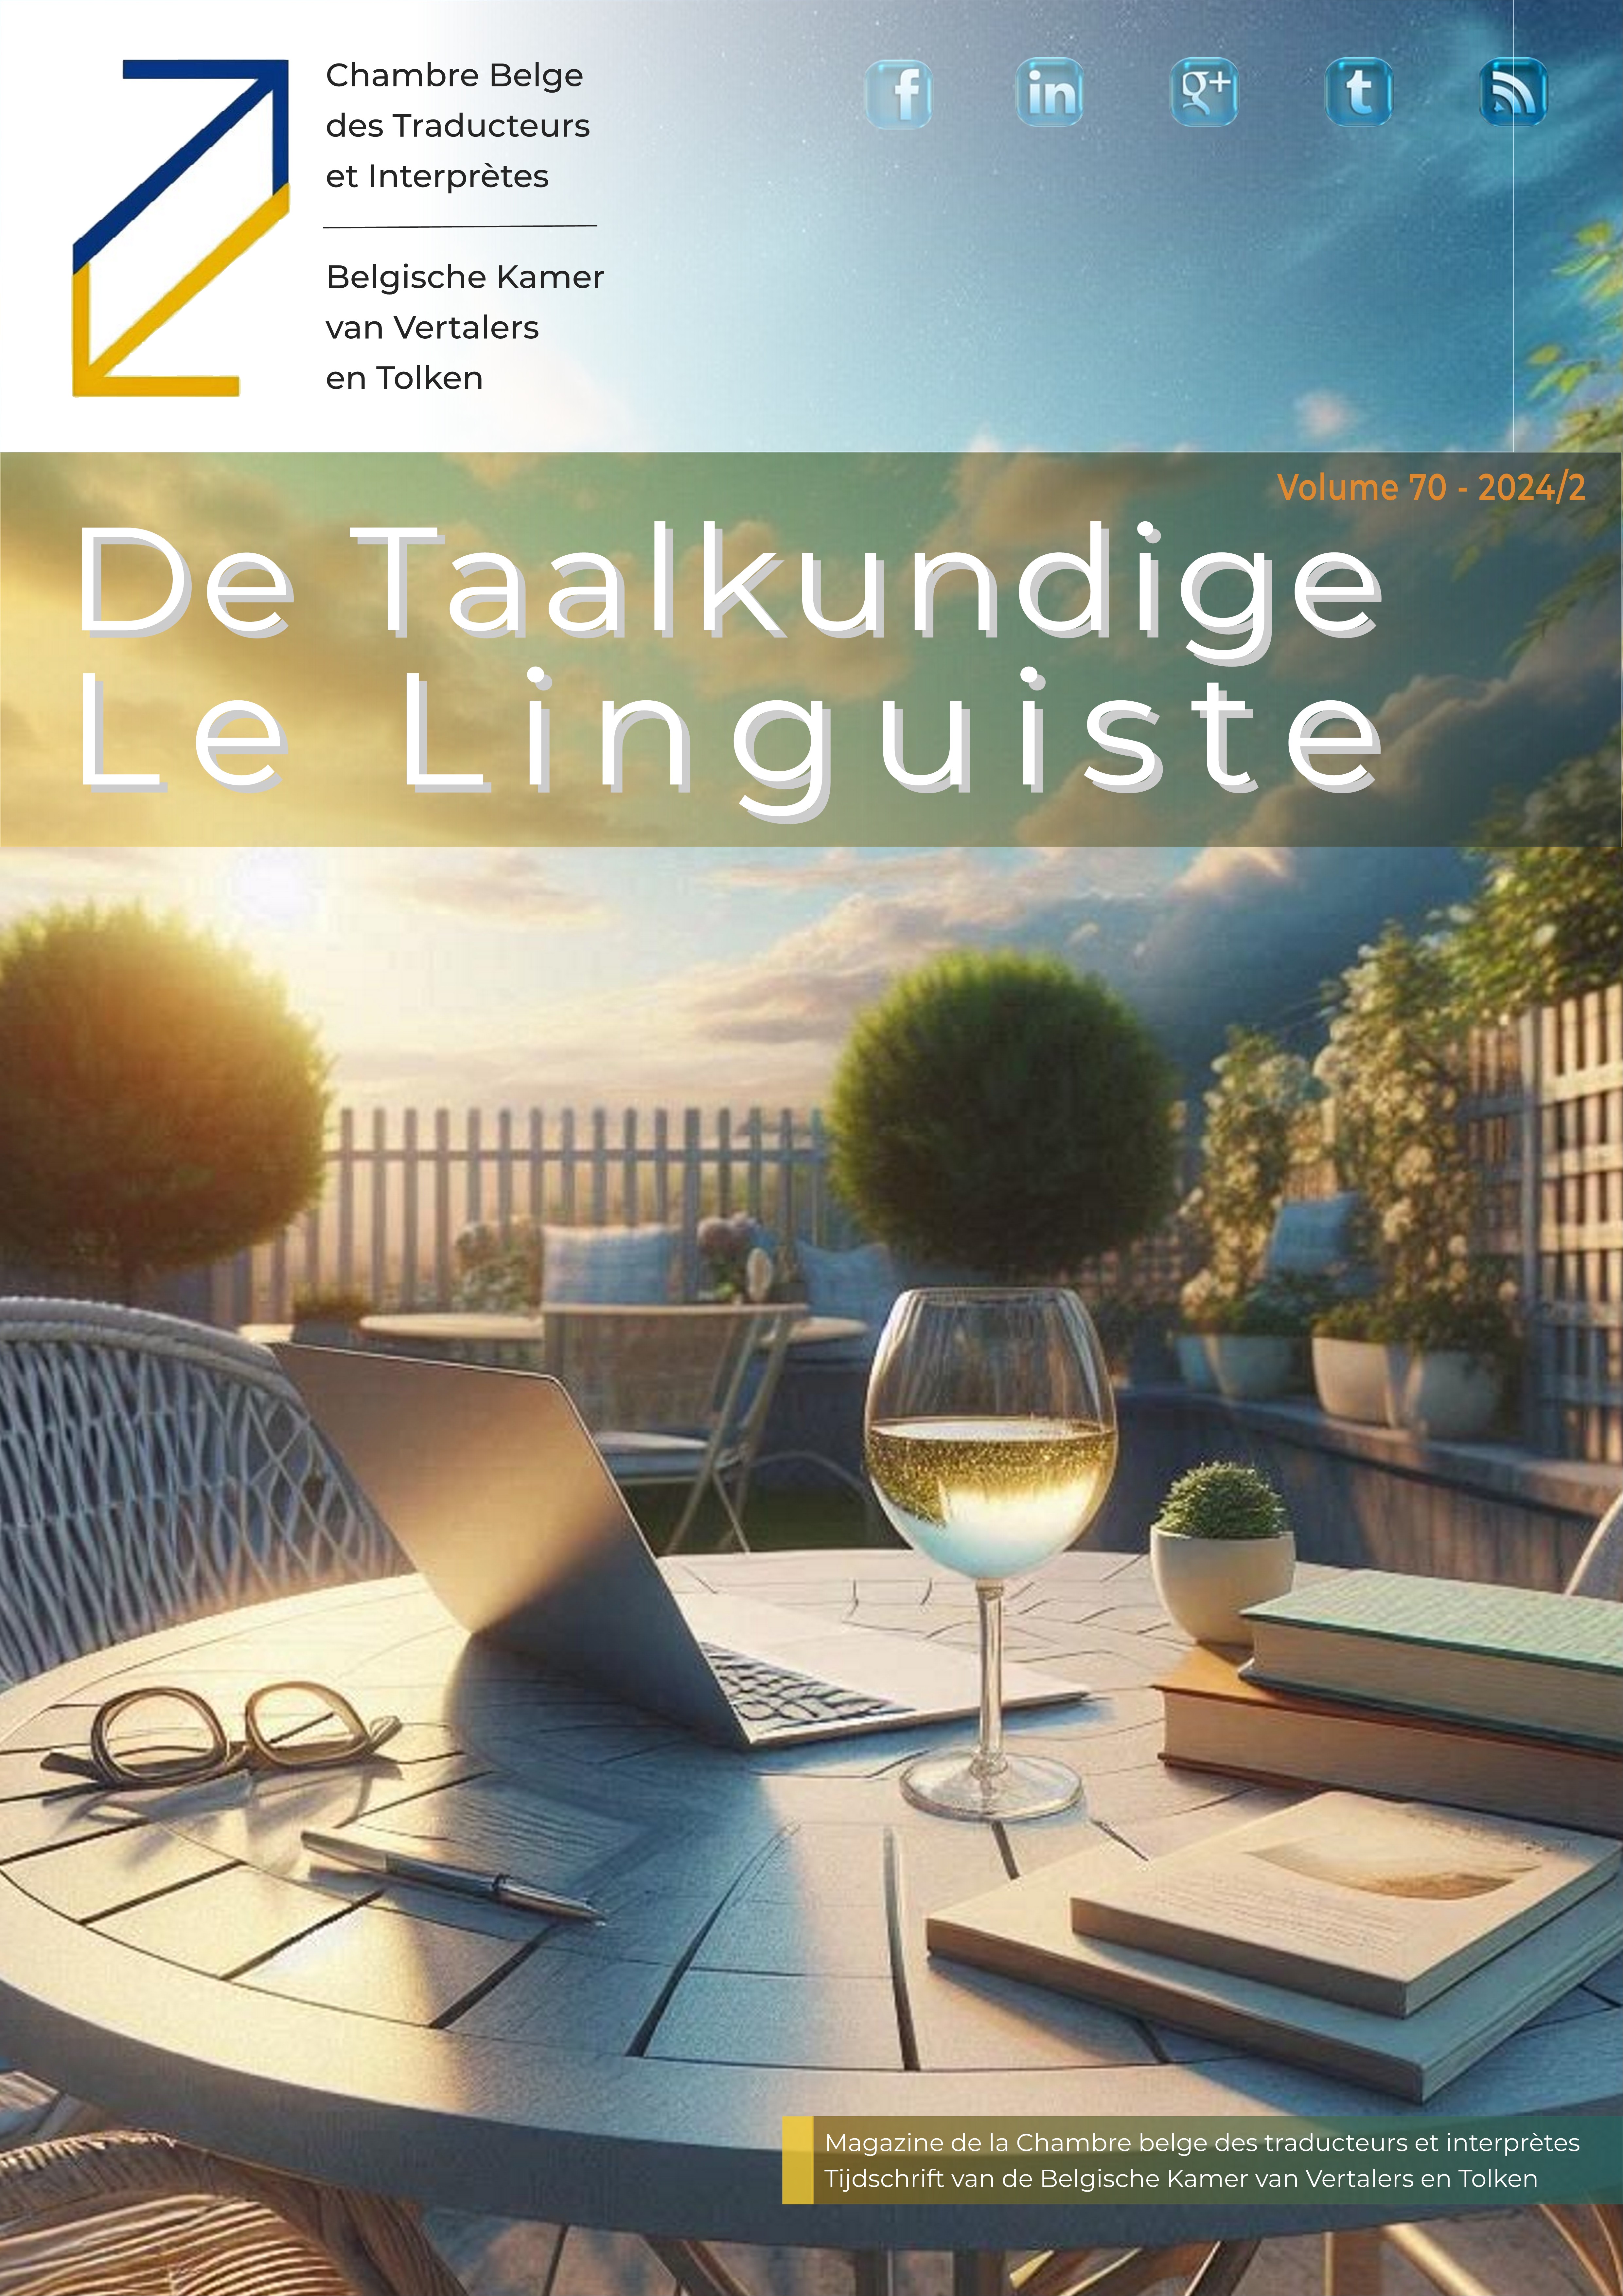 Image de présentation pour le document : De Taalkundige – Le Linguiste 2024-2